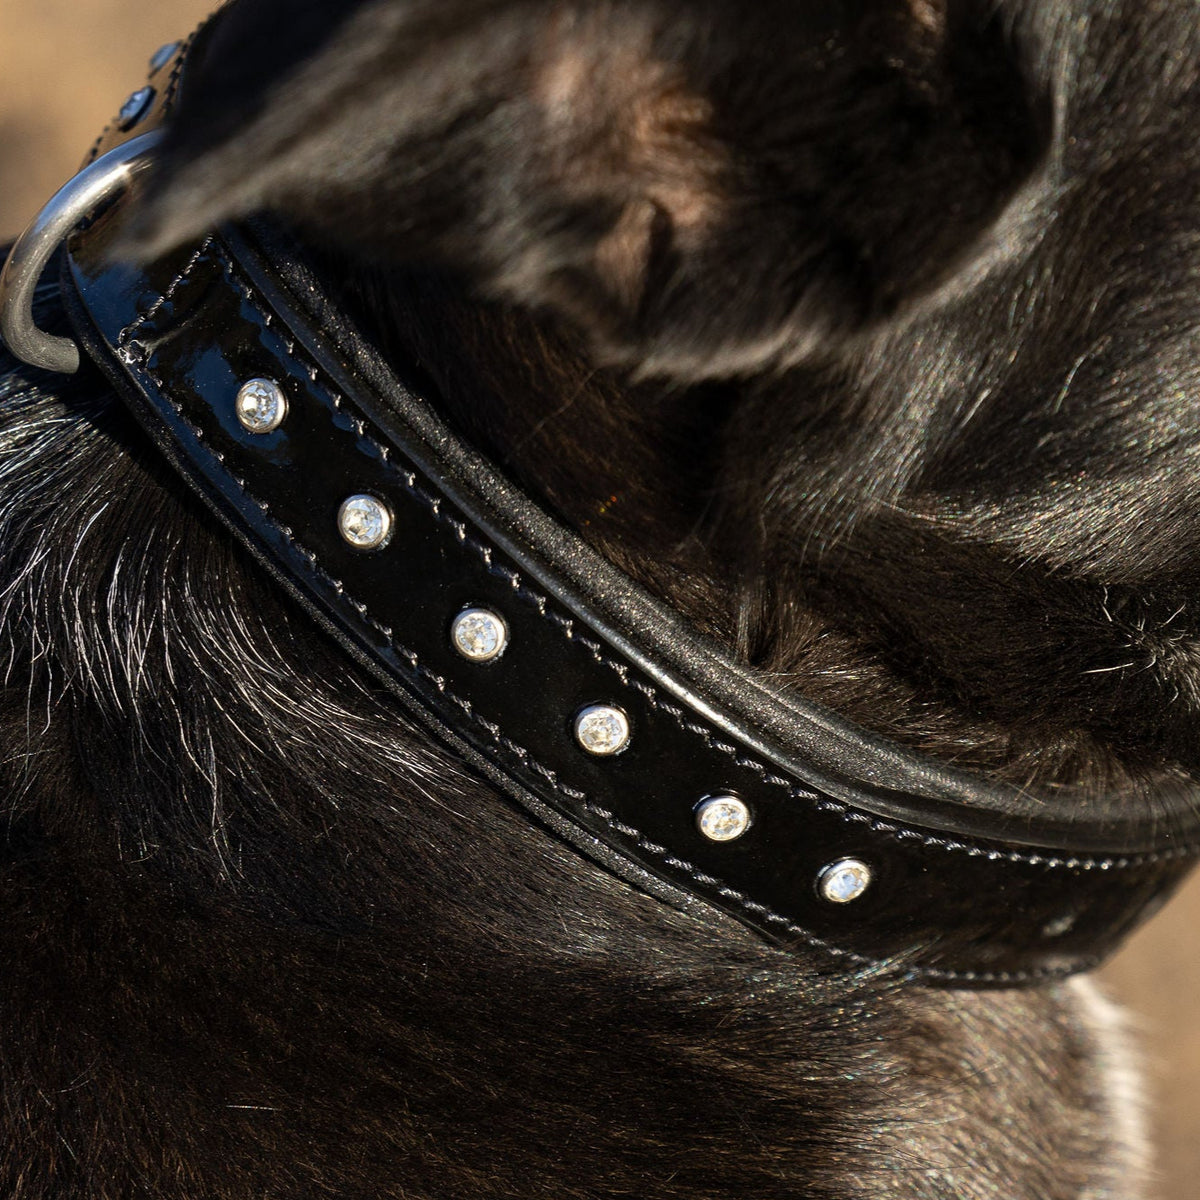 Halter Ego® Black Patent Celebrity Dog Collar